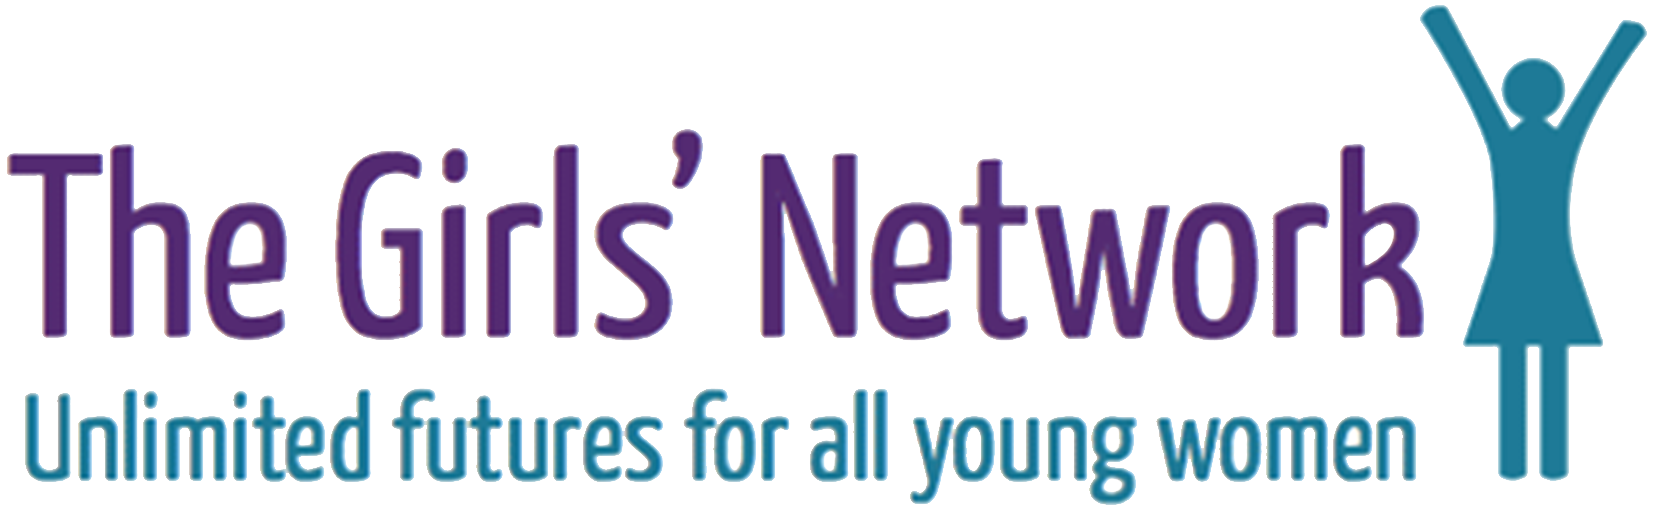 the girl's network logo